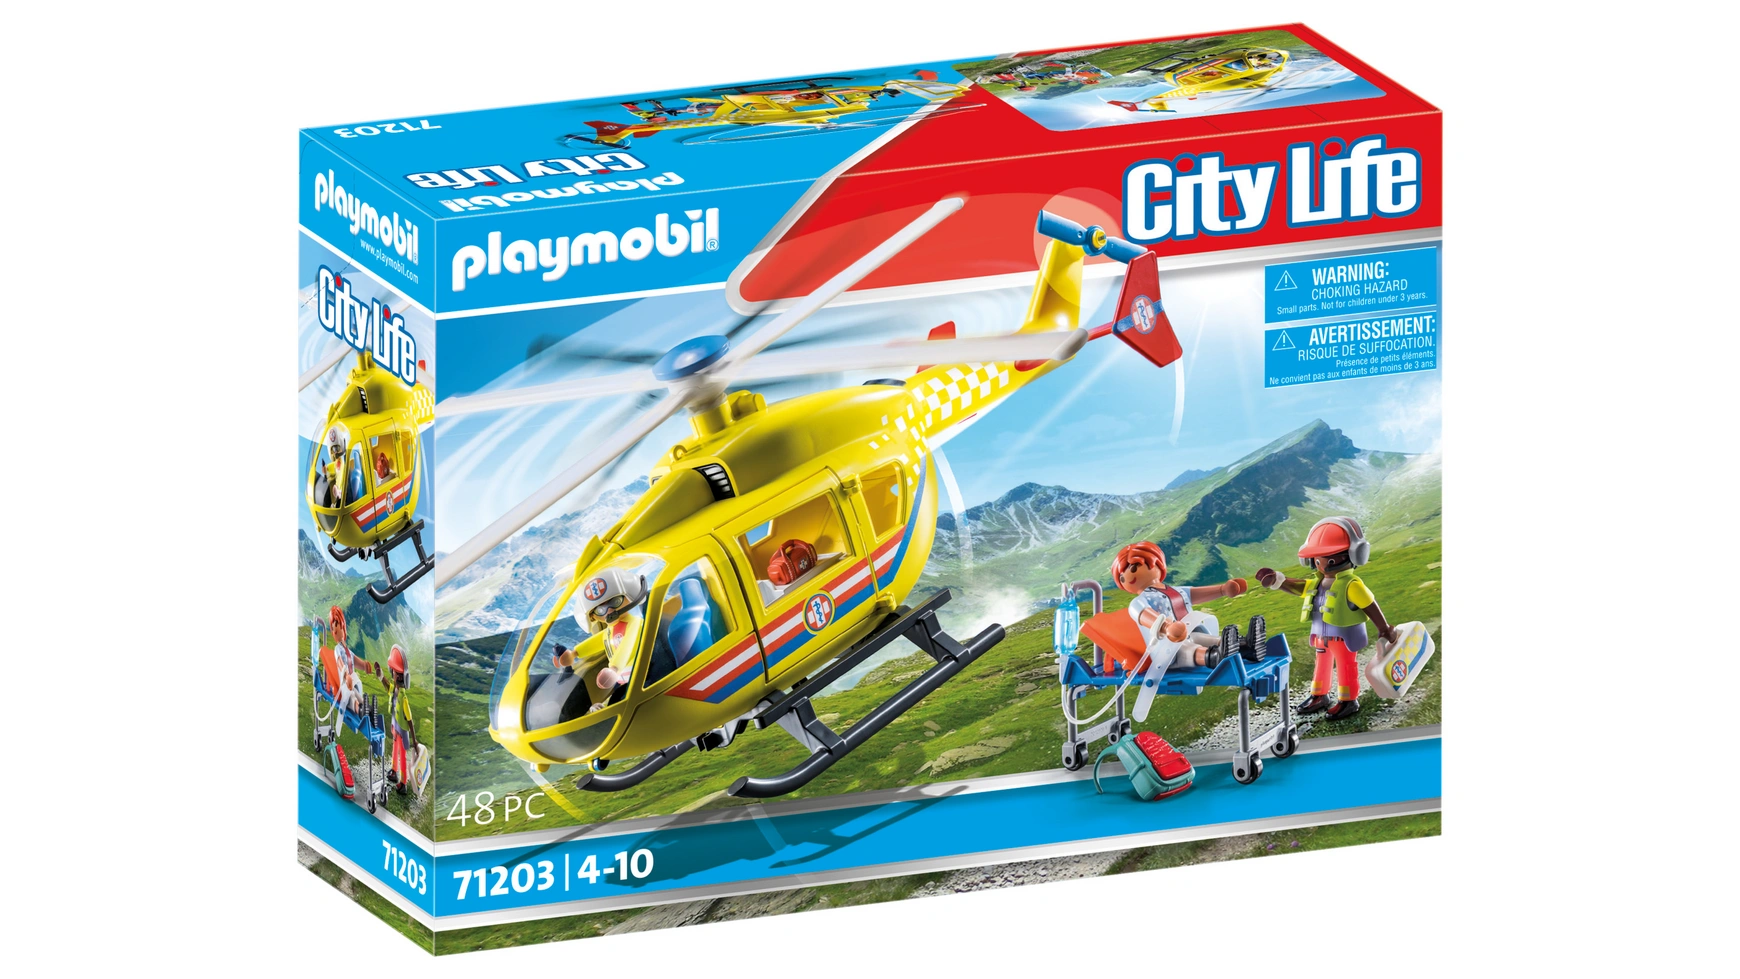 Городская жизнь спасательный вертолет Playmobil городская жизнь мои фигурки мода playmobil